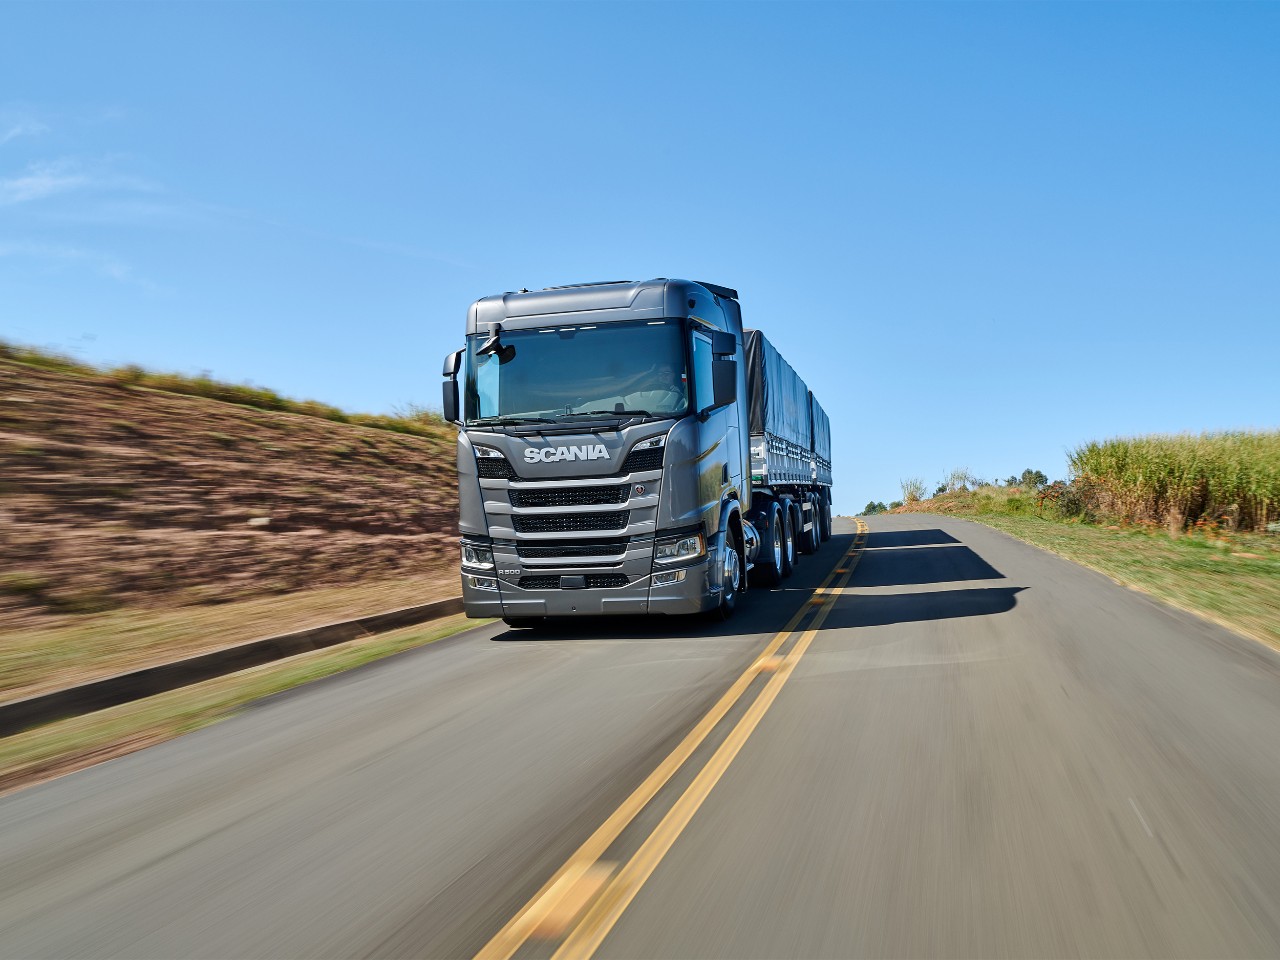 Camion Scania per il trasporto di granaglie e cereali. Veicoli per il trasporto agricolo e di bestiame